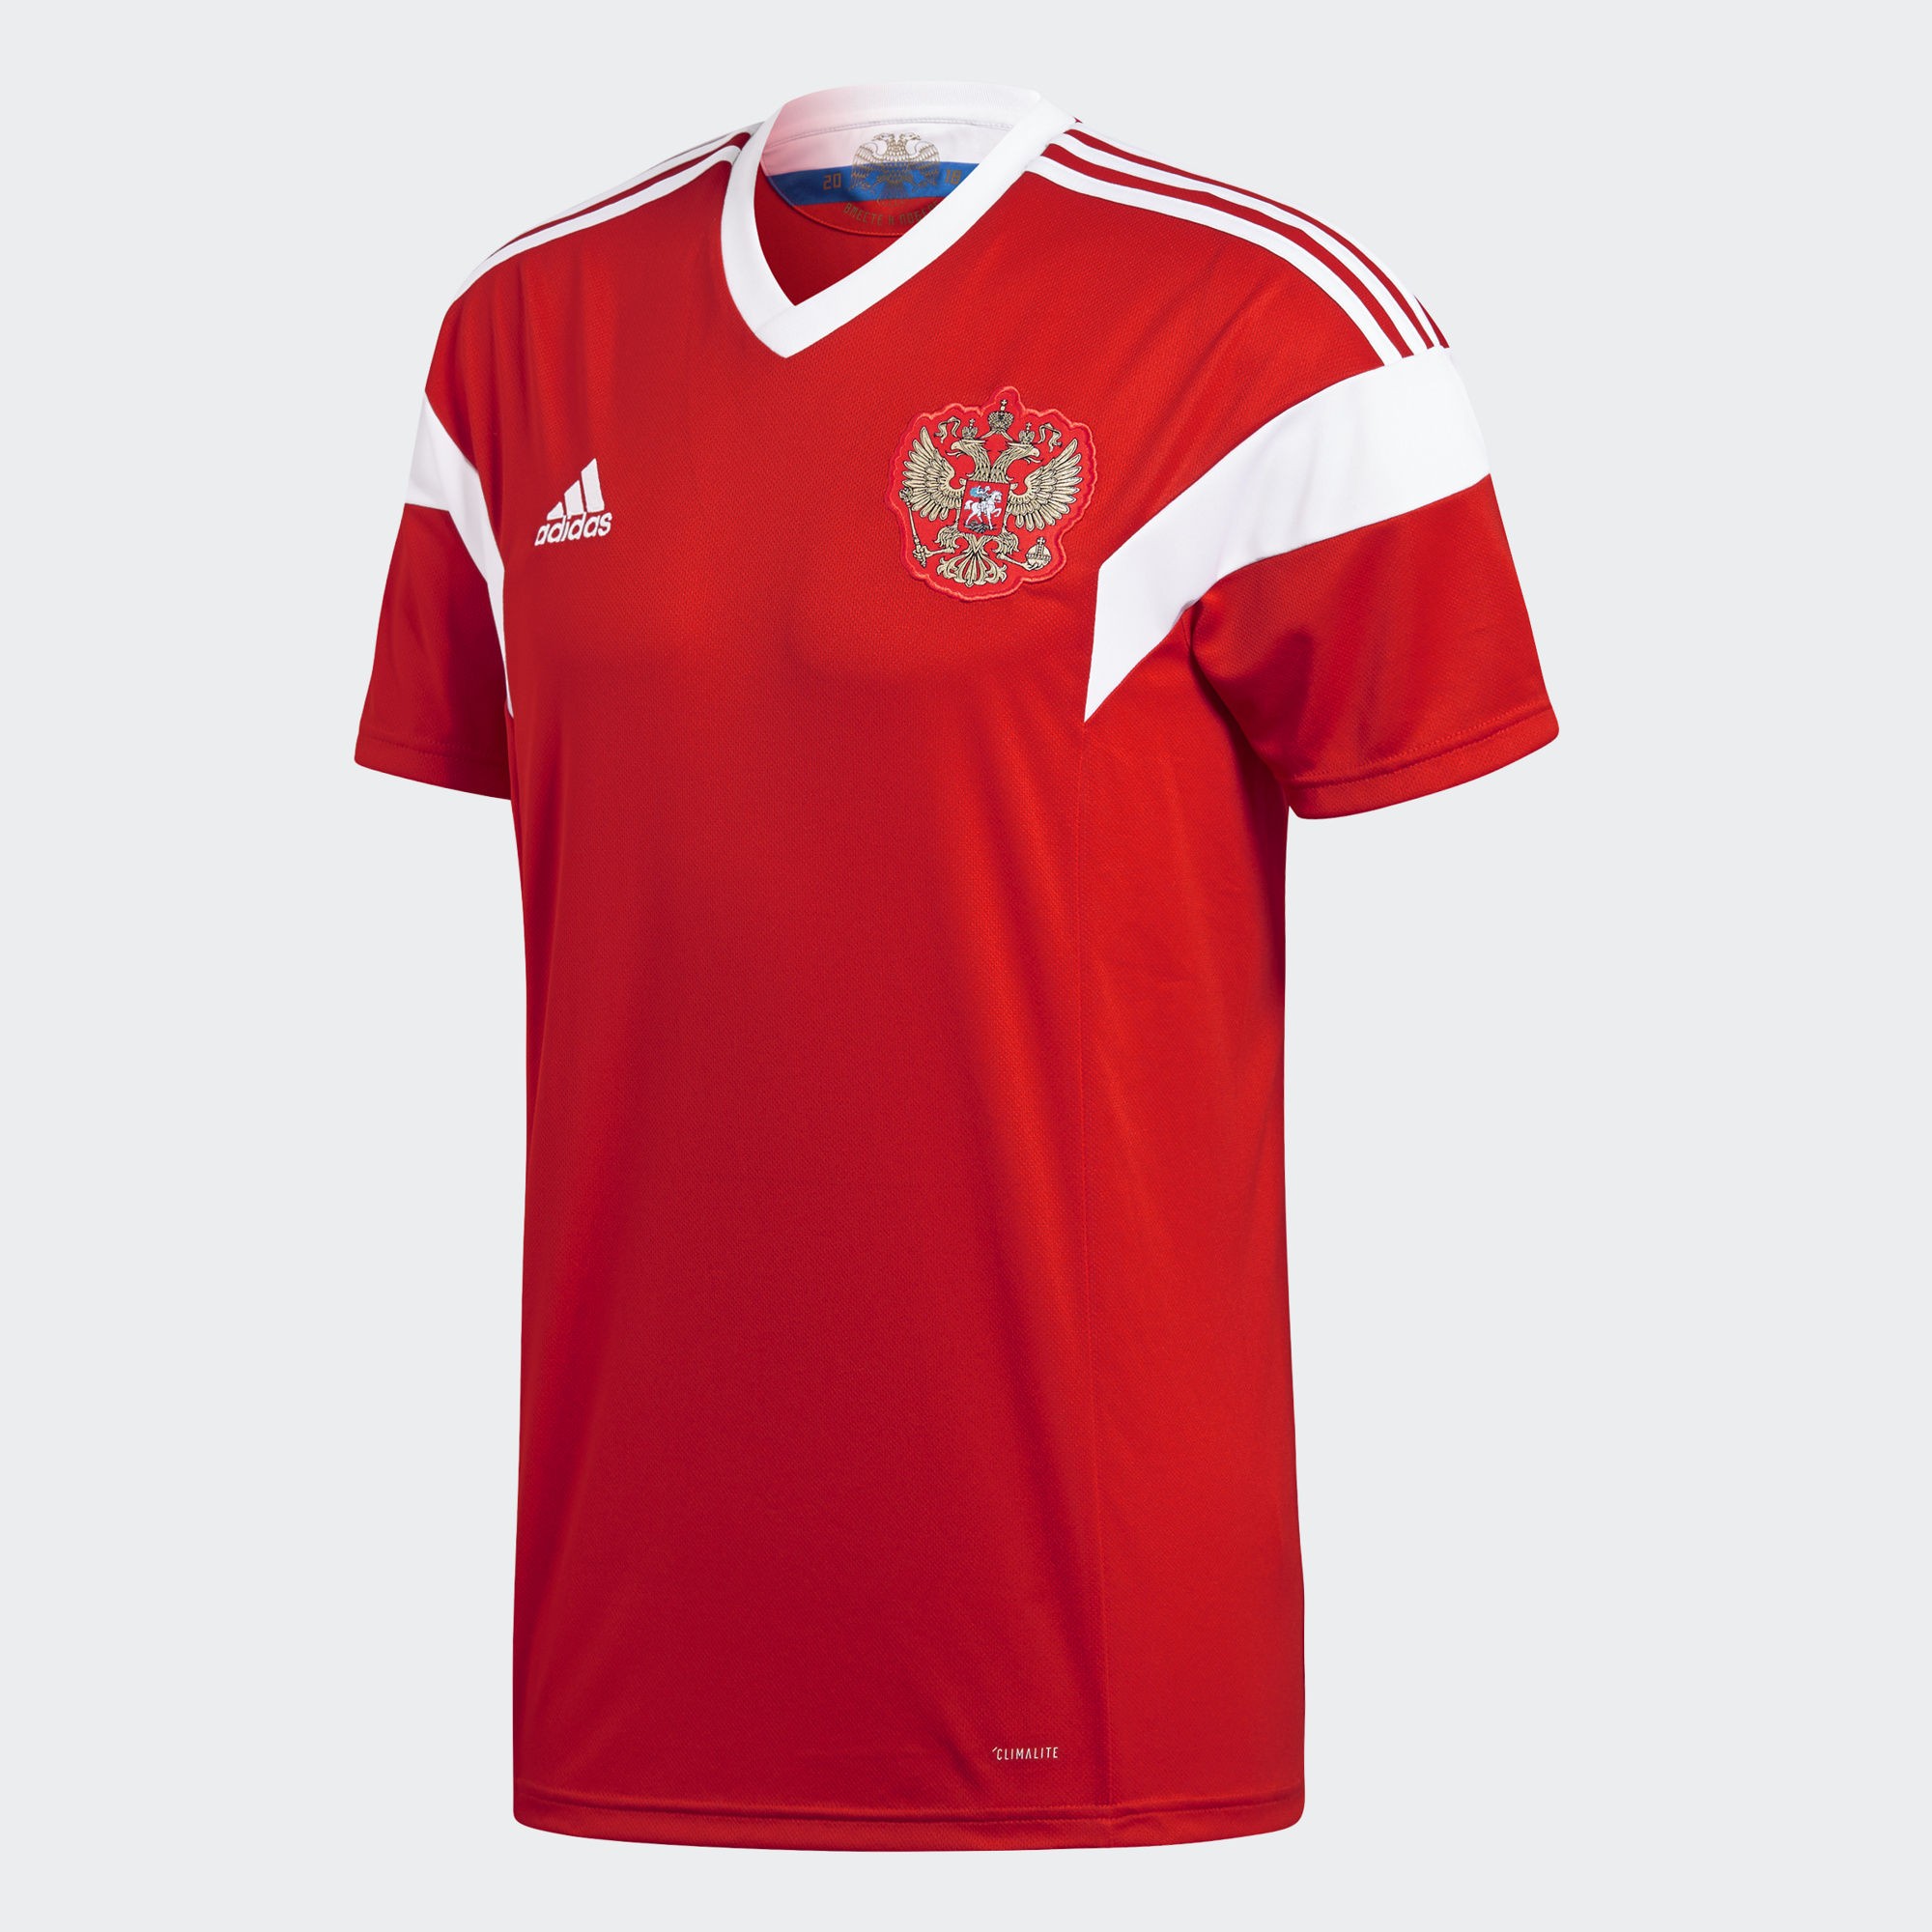 雄心壮志!俄罗斯国家队2018世界杯球衣发布!